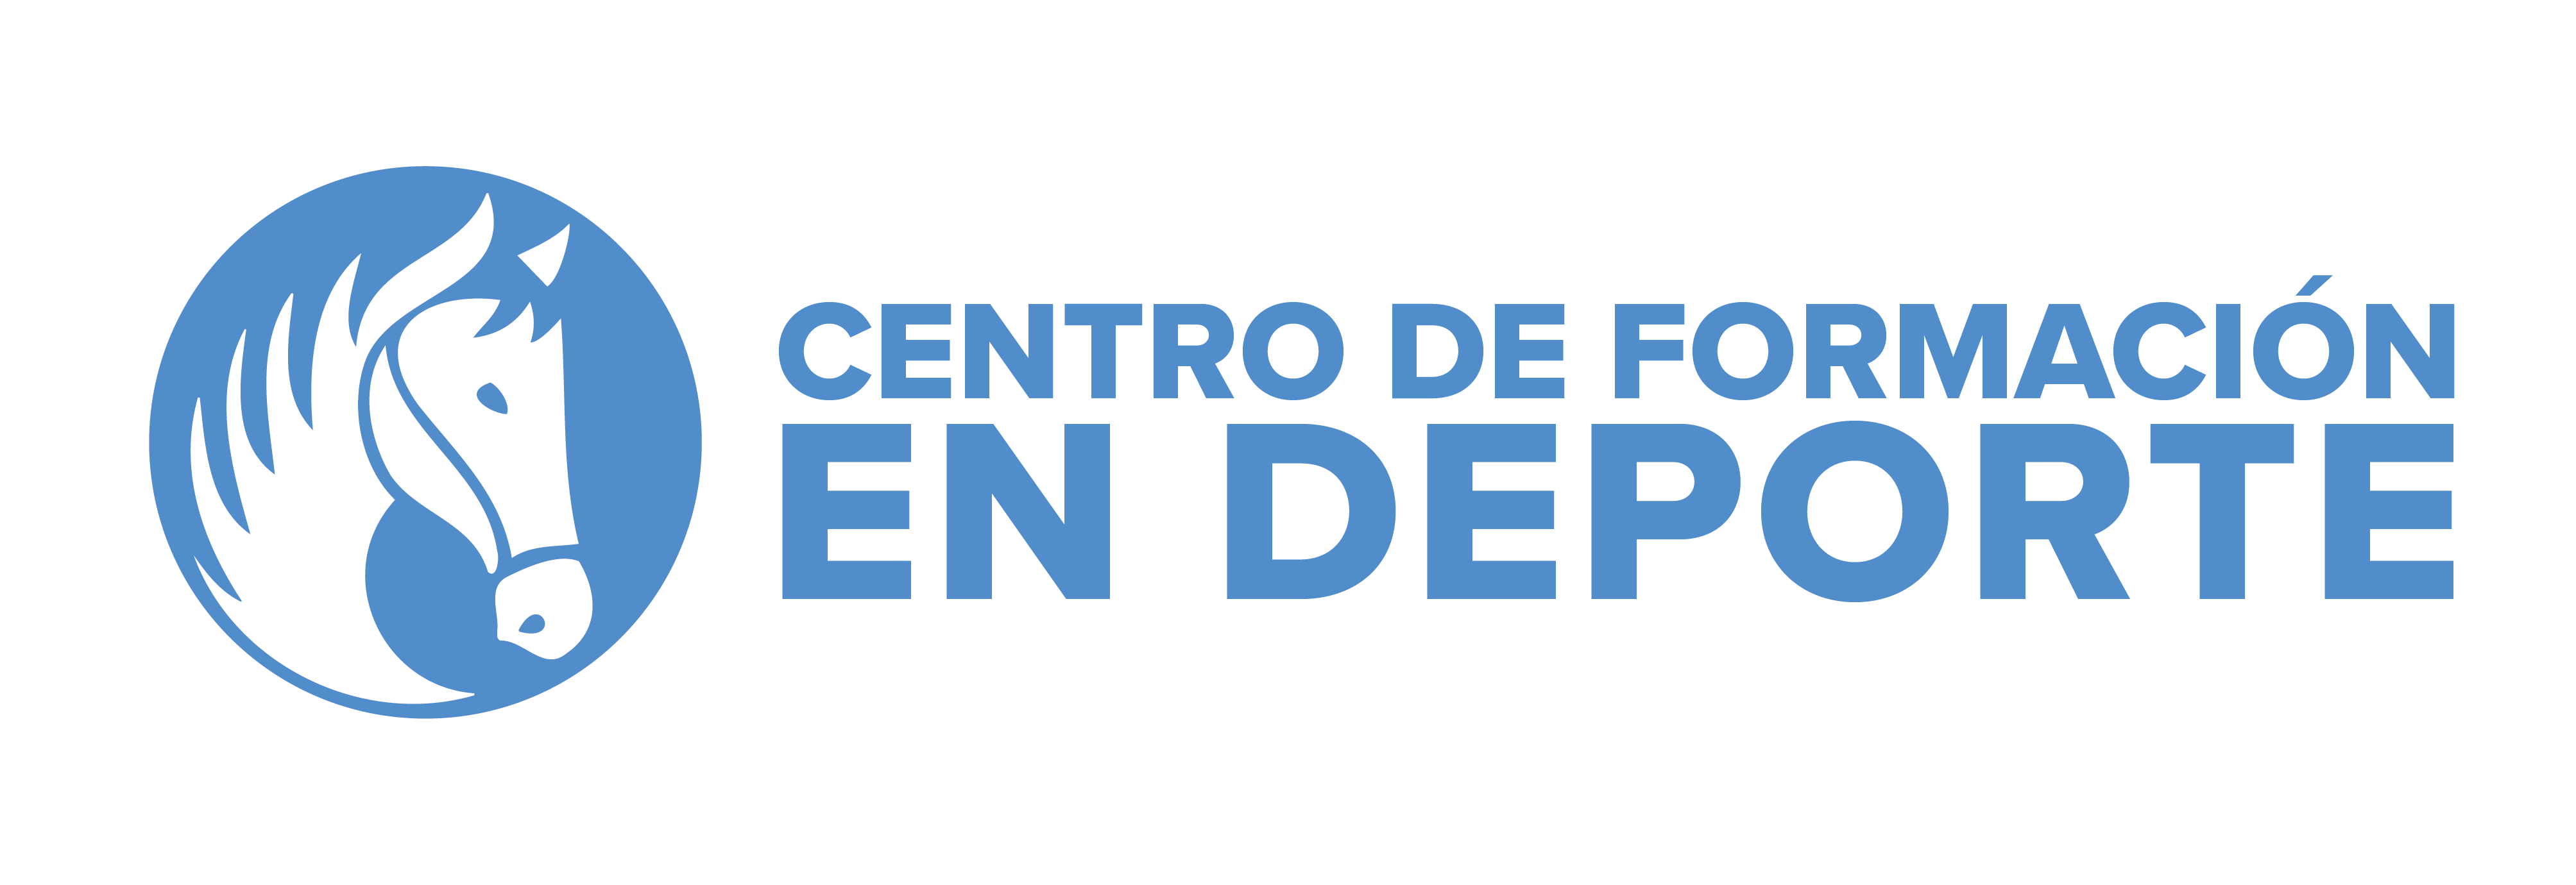 Logotipo de Centro de Formación en Deporte